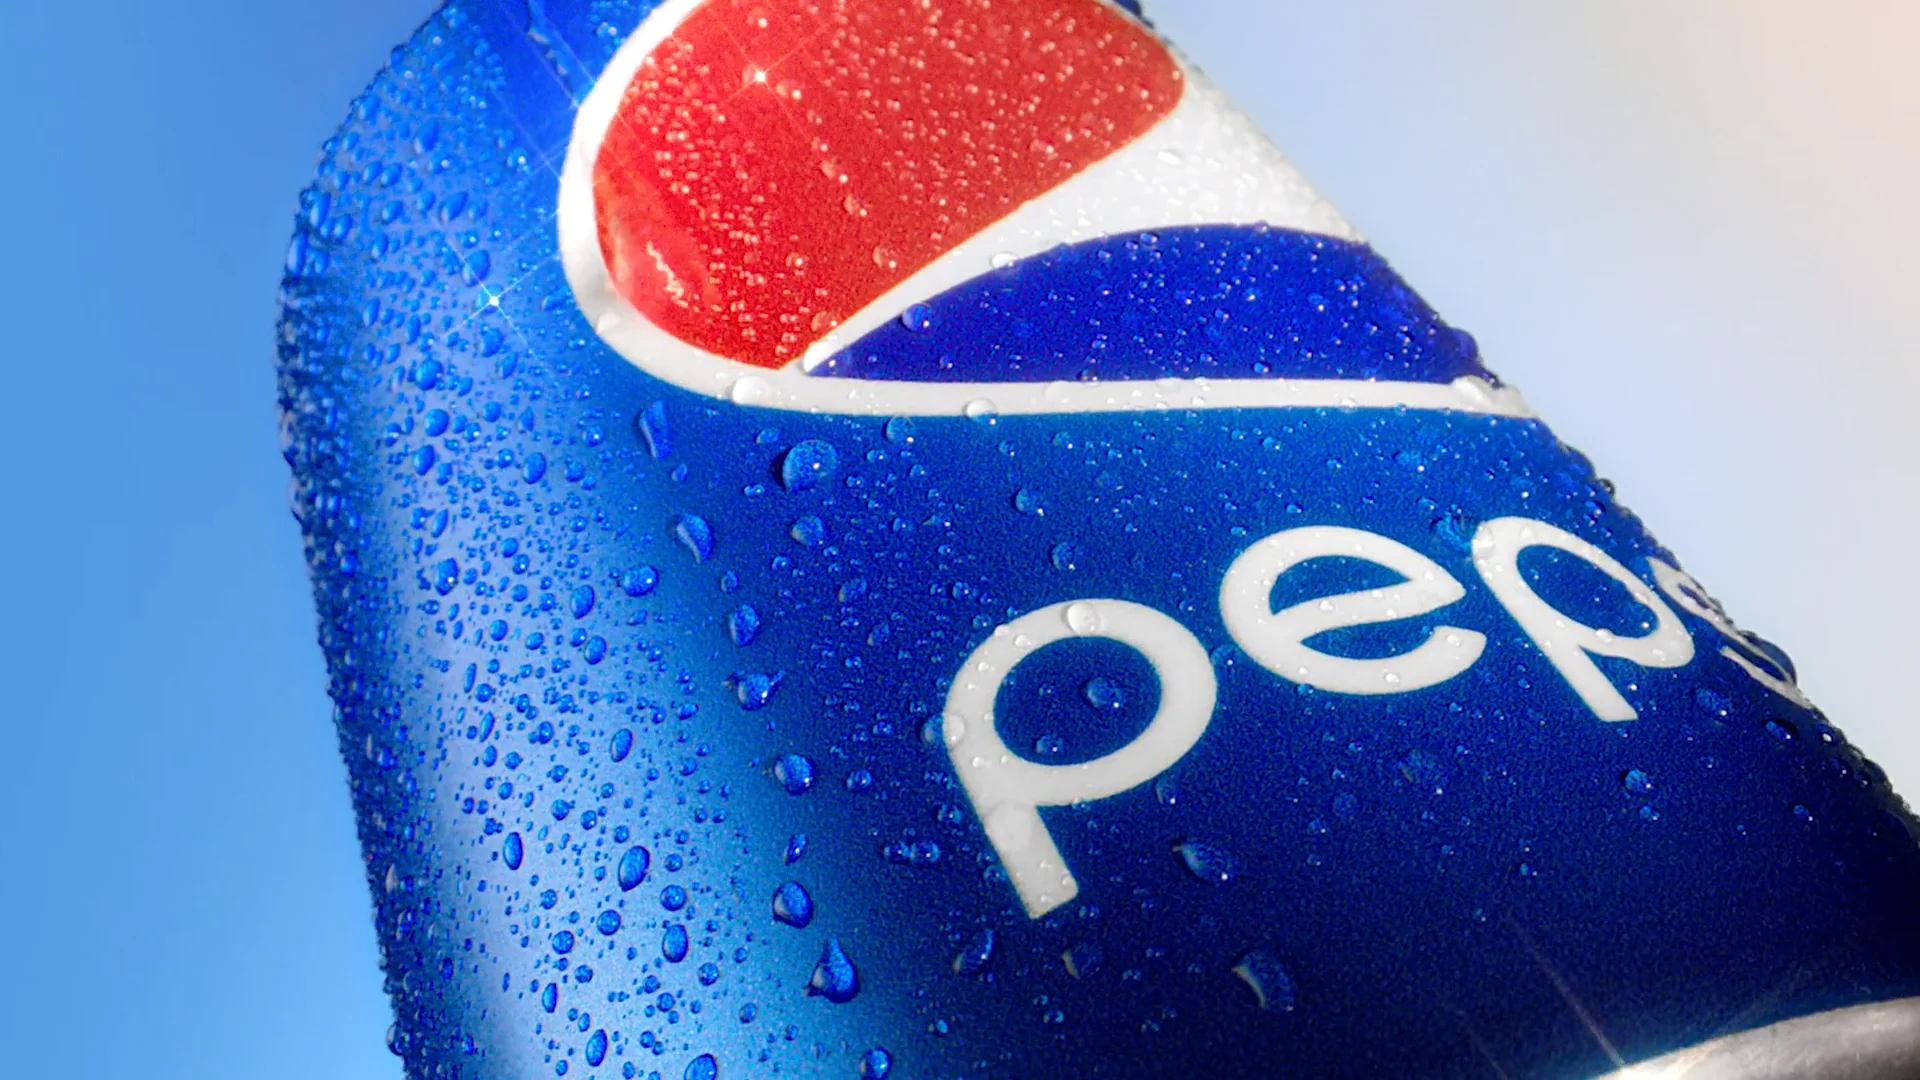 Pepsi 'Fizz' on Vimeo